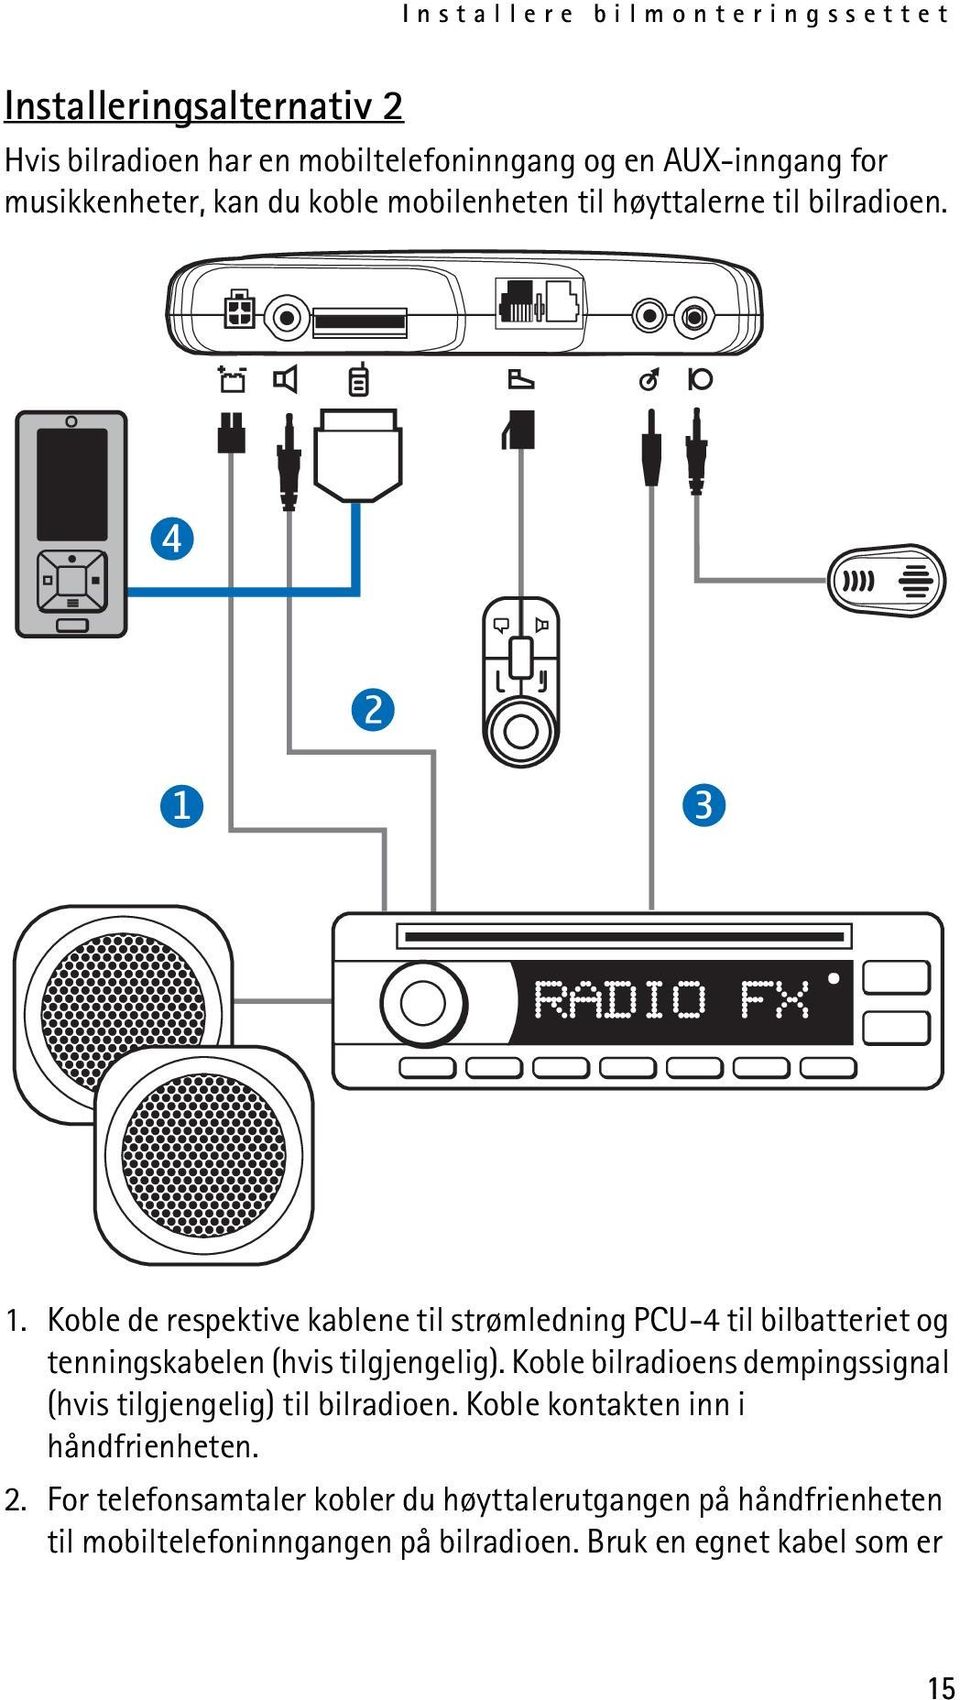 Koble de respektive kablene til strømledning PCU-4 til bilbatteriet og tenningskabelen (hvis tilgjengelig).